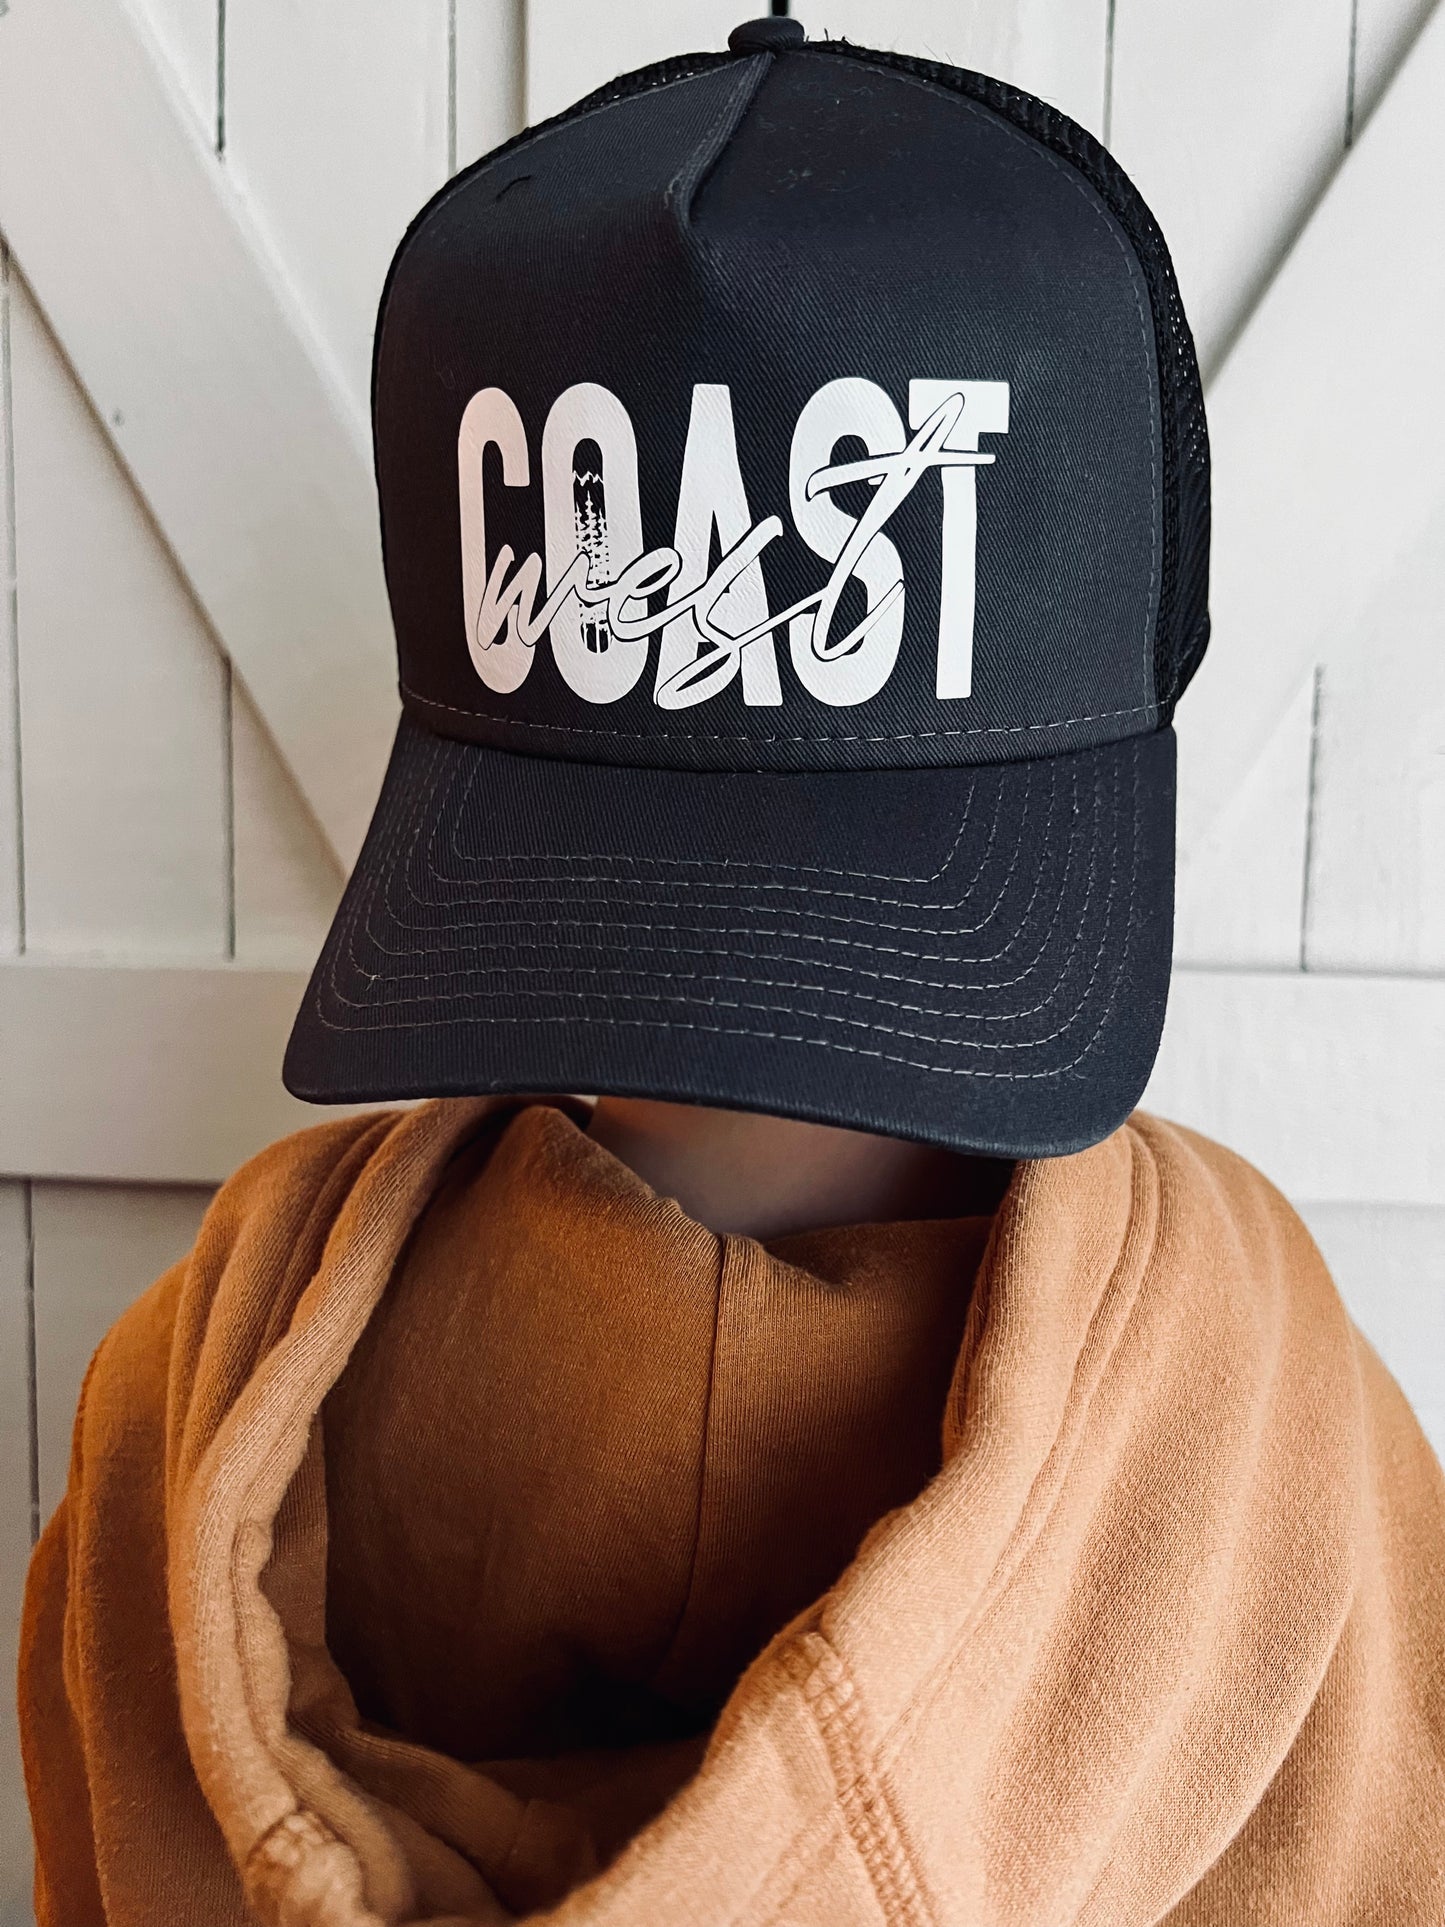 West Coast Hat